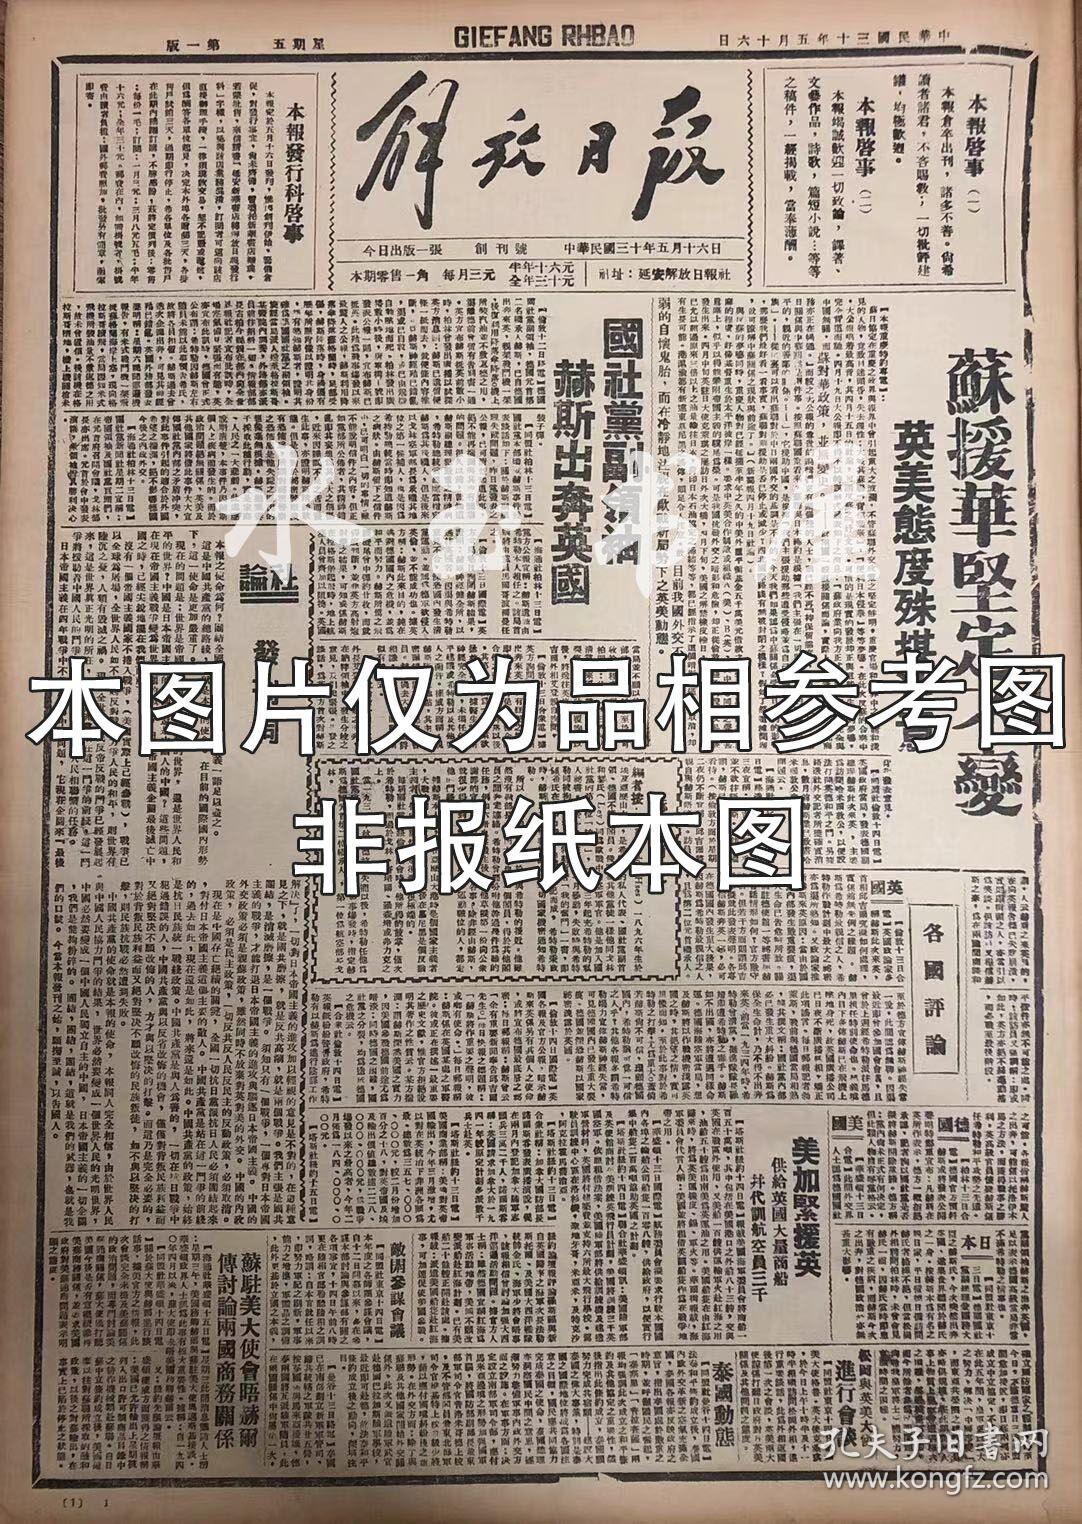 1941年5月16日 《解放日報》五四年影印  解放日報創刊號